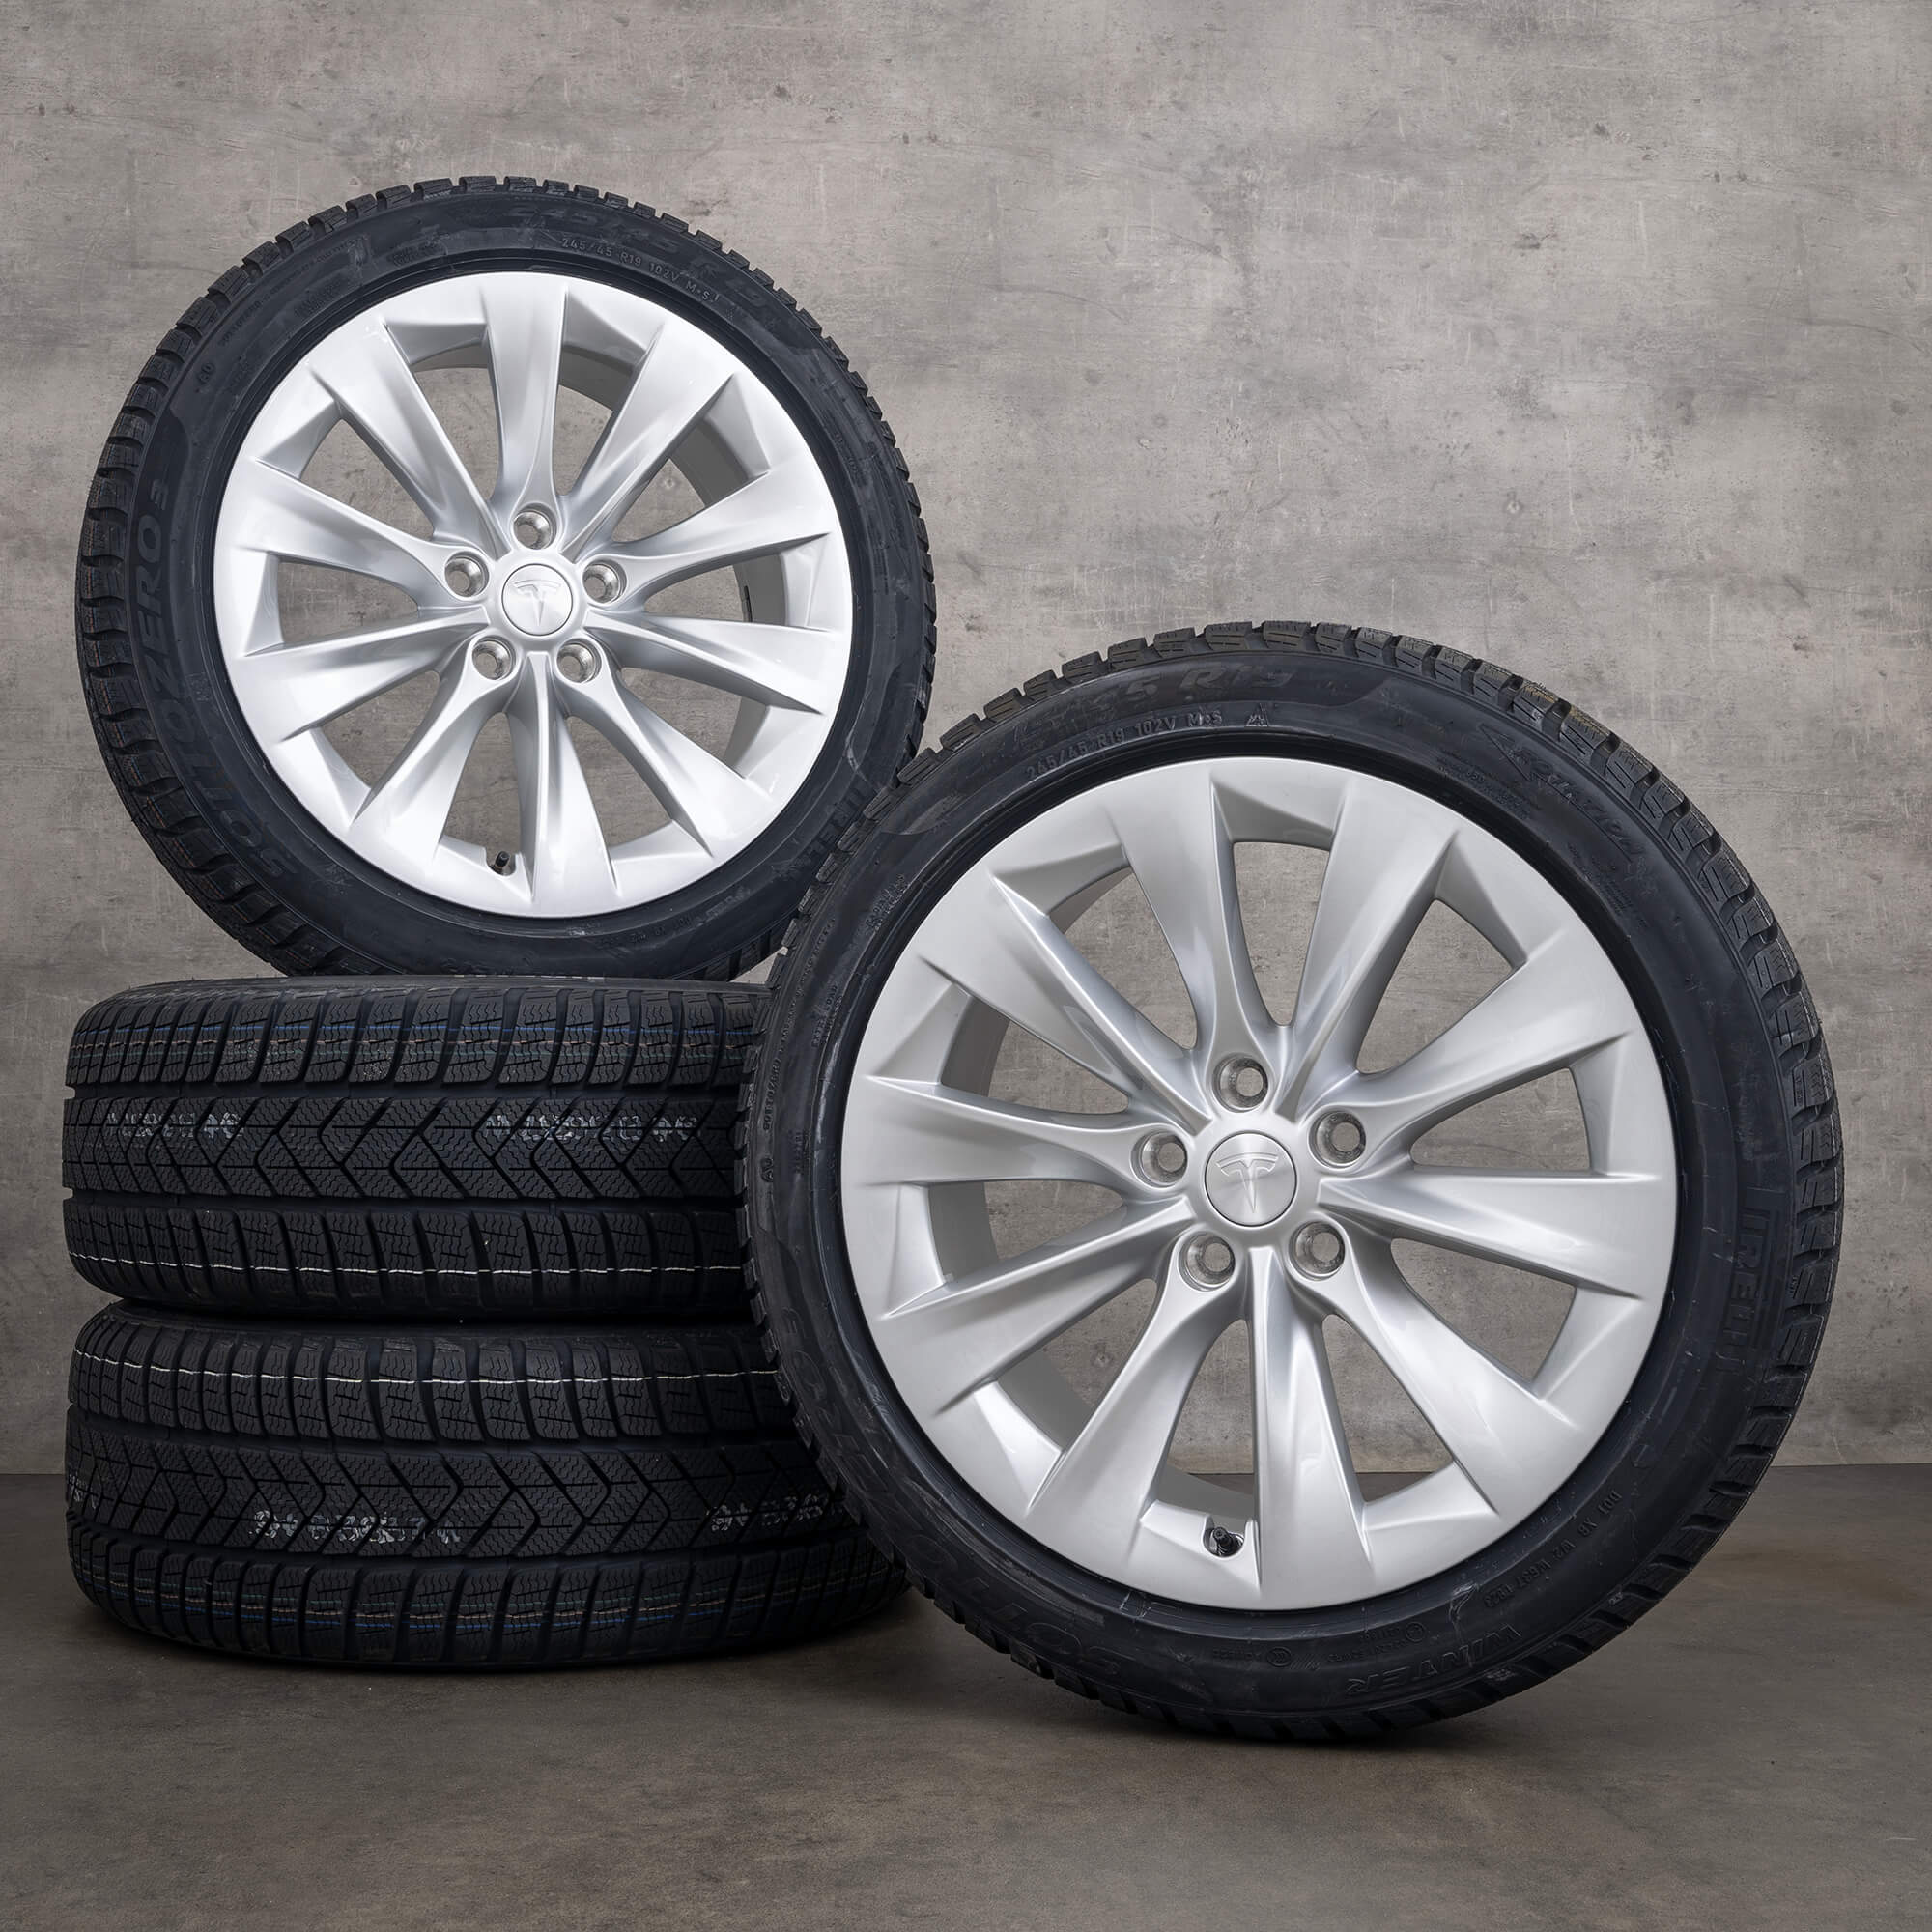 Tesla 19 inch rims Model S winter tires winter wheels 1059337-00-B alloy